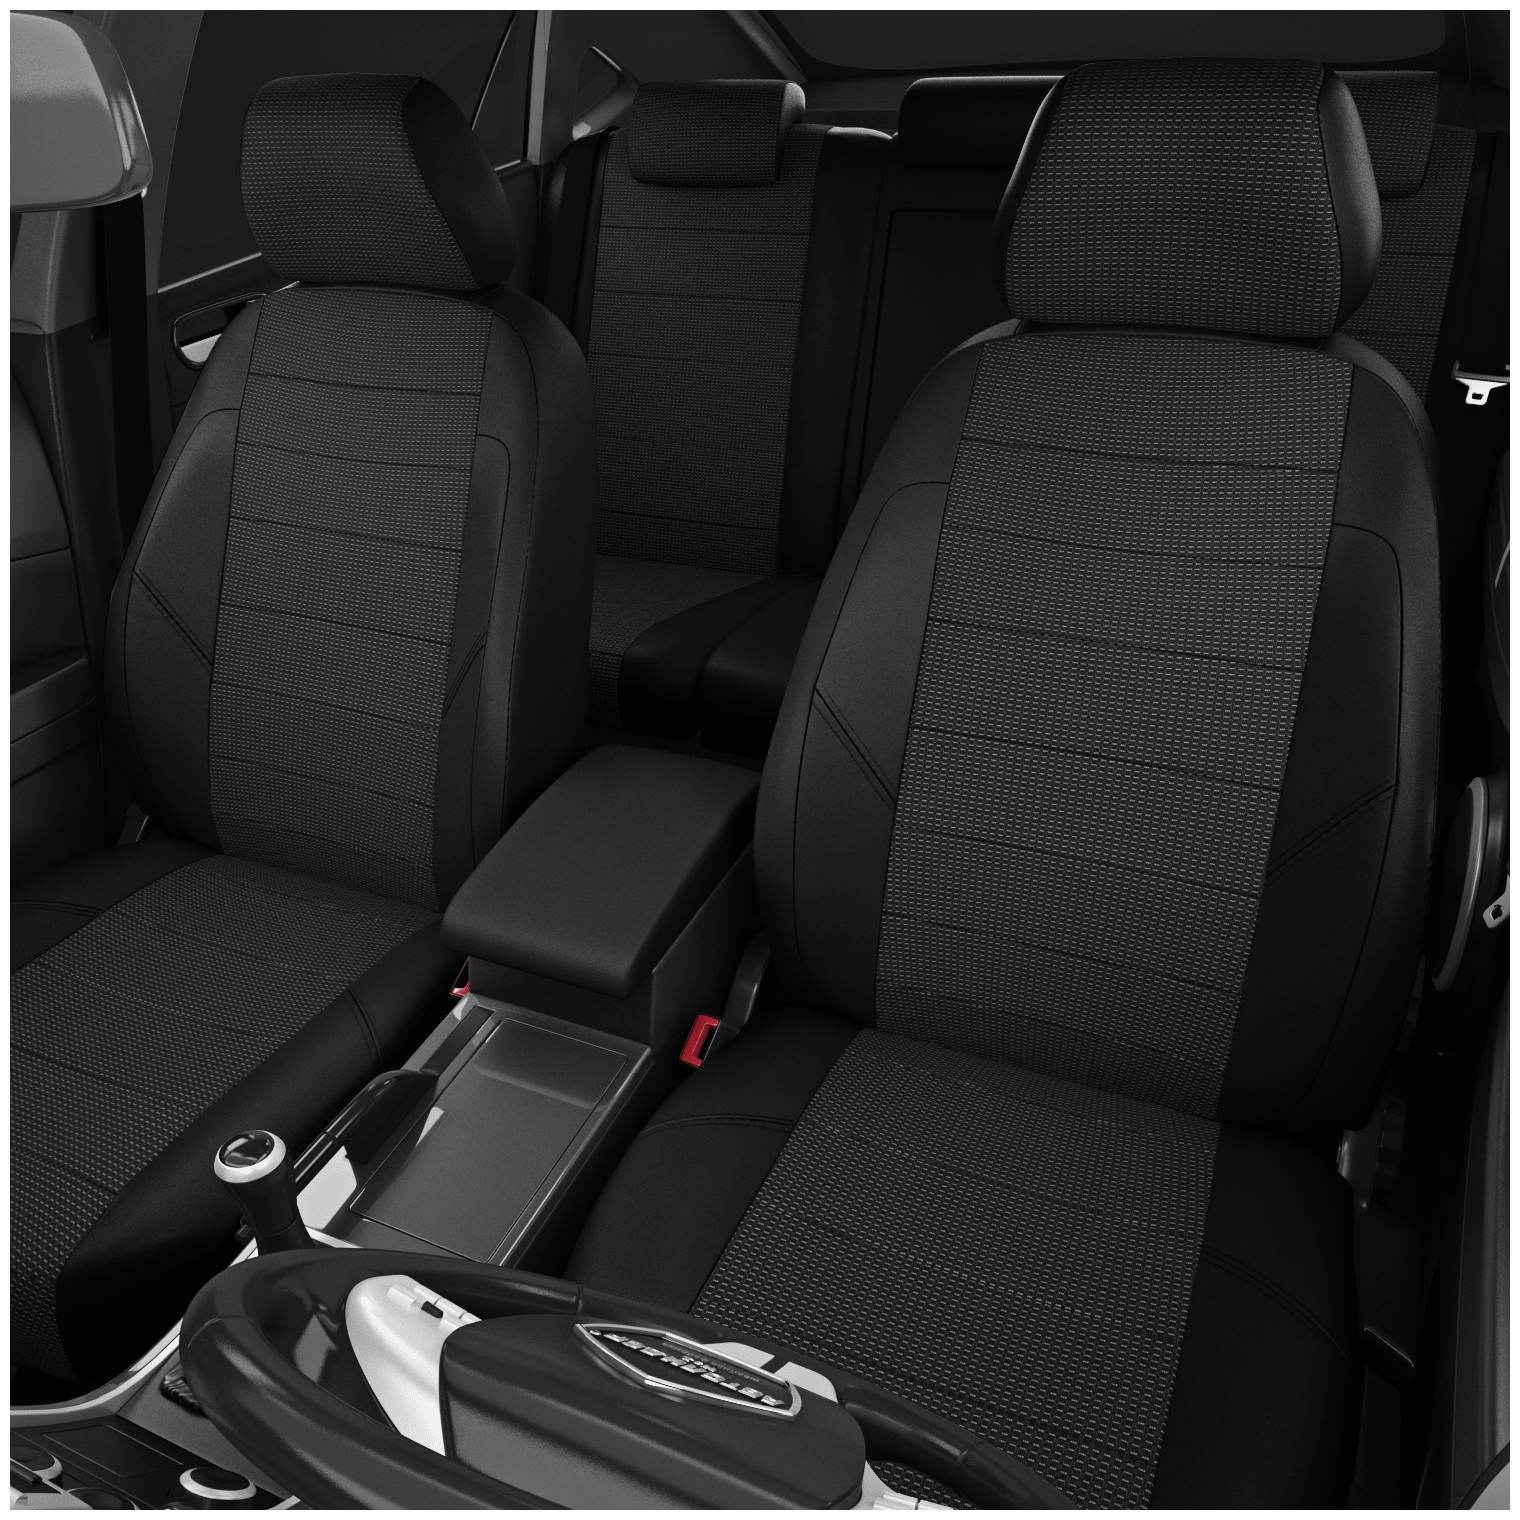 Чехлы на сиденья Suzuki Sx4 (Сузуки Сх4) SX4 NEW с 2014-н. в. хэтчбек 5 мест серый-чёрный - фотография № 2